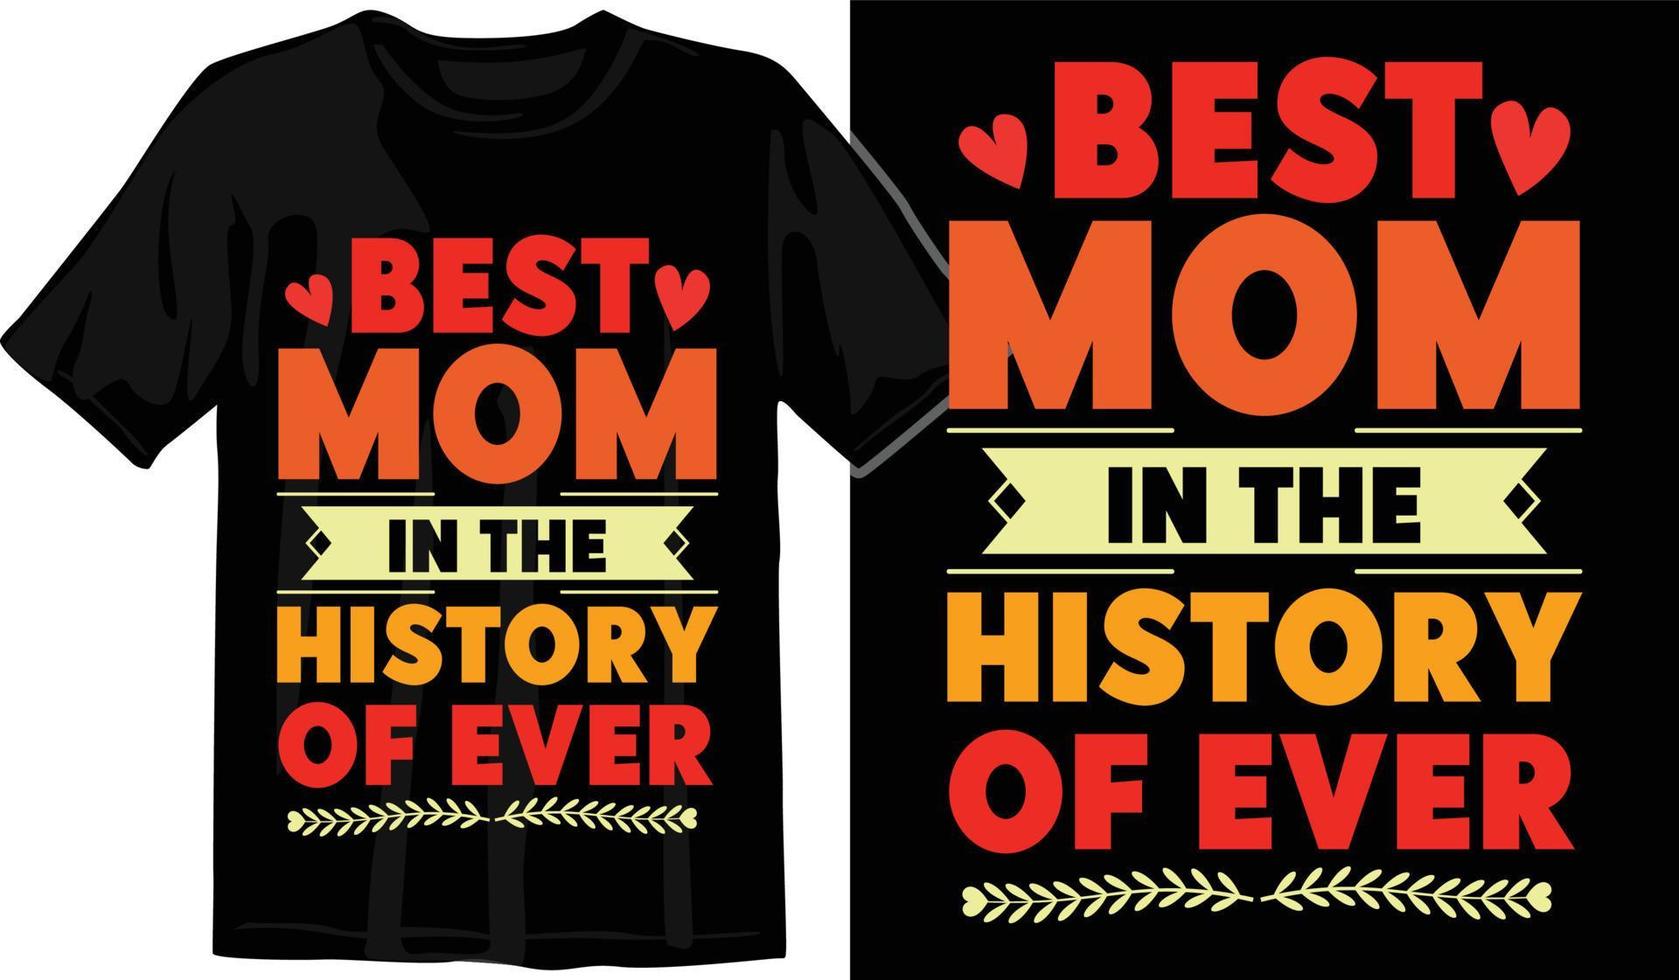 moeder dag, mama, mama, mama, familie SVG t overhemd ontwerp, typografie t overhemd ontwerpen vector